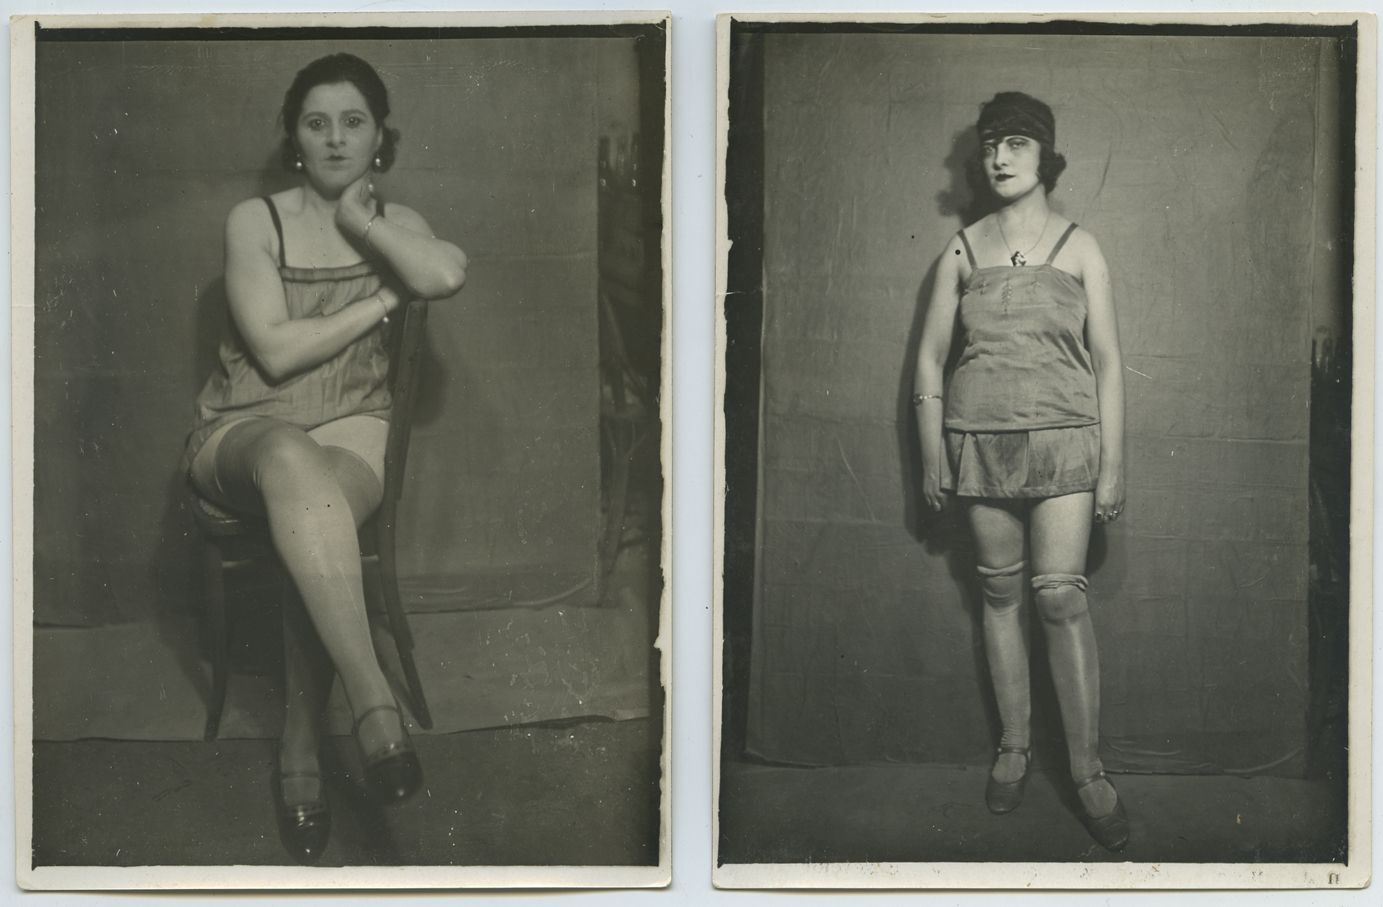 Null [身份不明的摄影师］穿衬衫的女孩，约 1930 年。2 幅银质复古照片，12 x 9 厘米。背面空白。